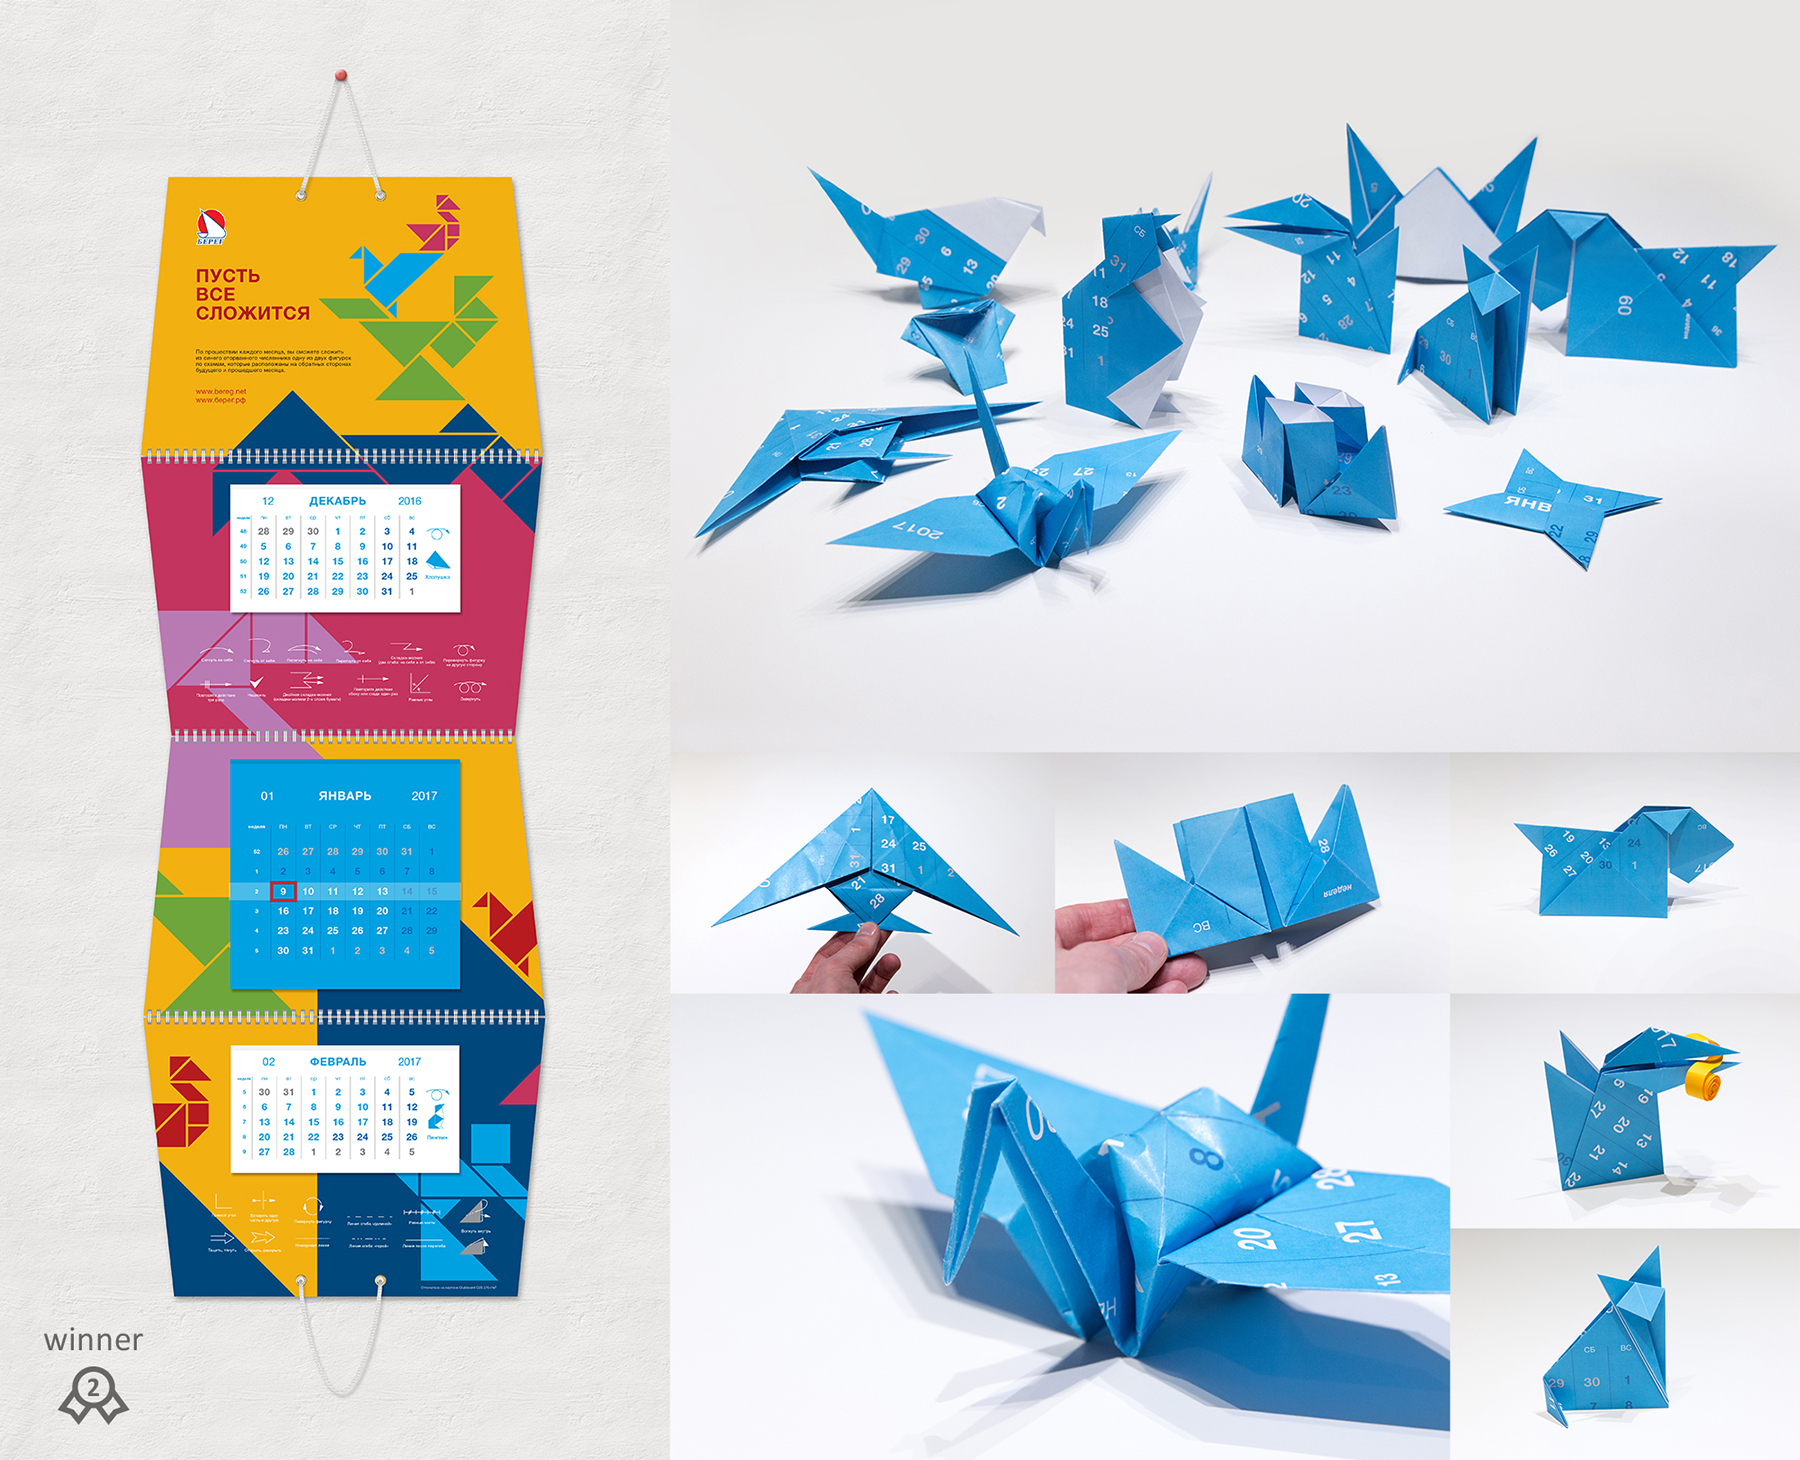 Дизайн необычных календарей. 7 идей от креативщиков